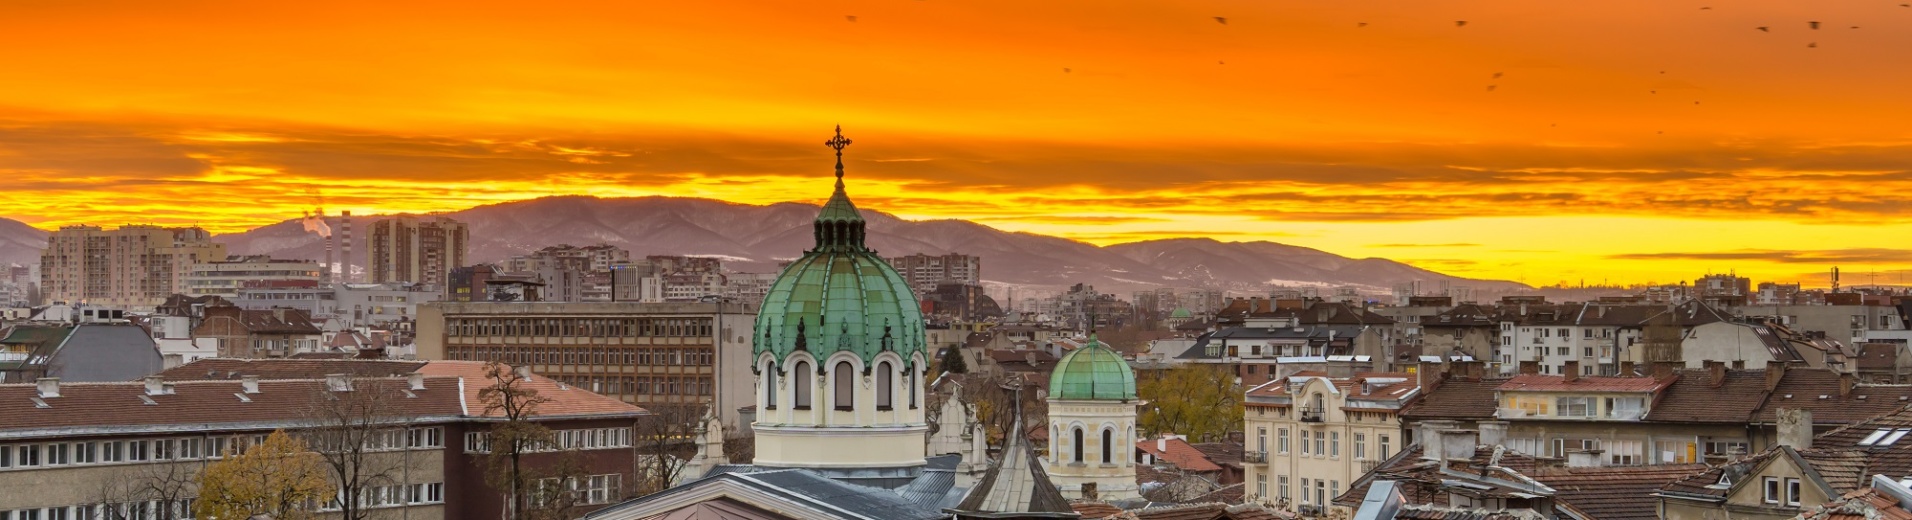 Les toits de la ville de Sofia au coucher du soleil